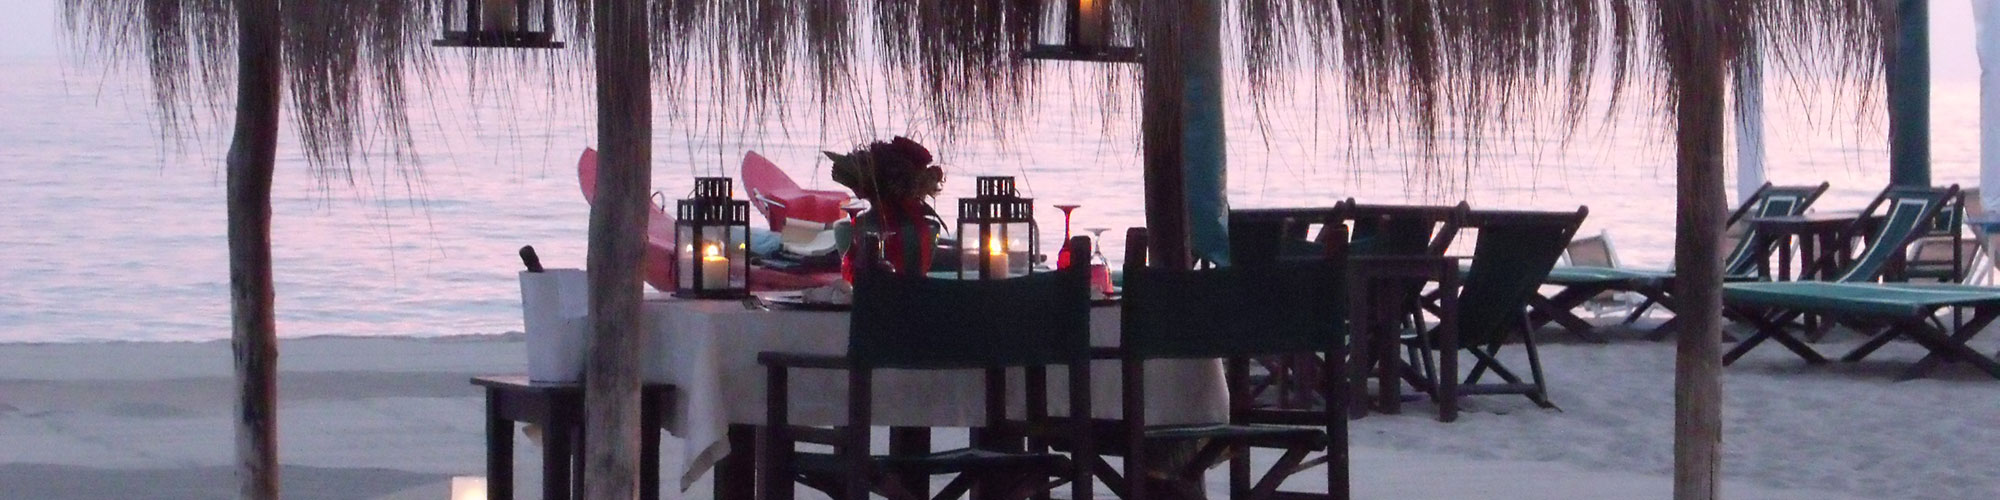 Bagno Malù cena atmosfera romantica sul mare